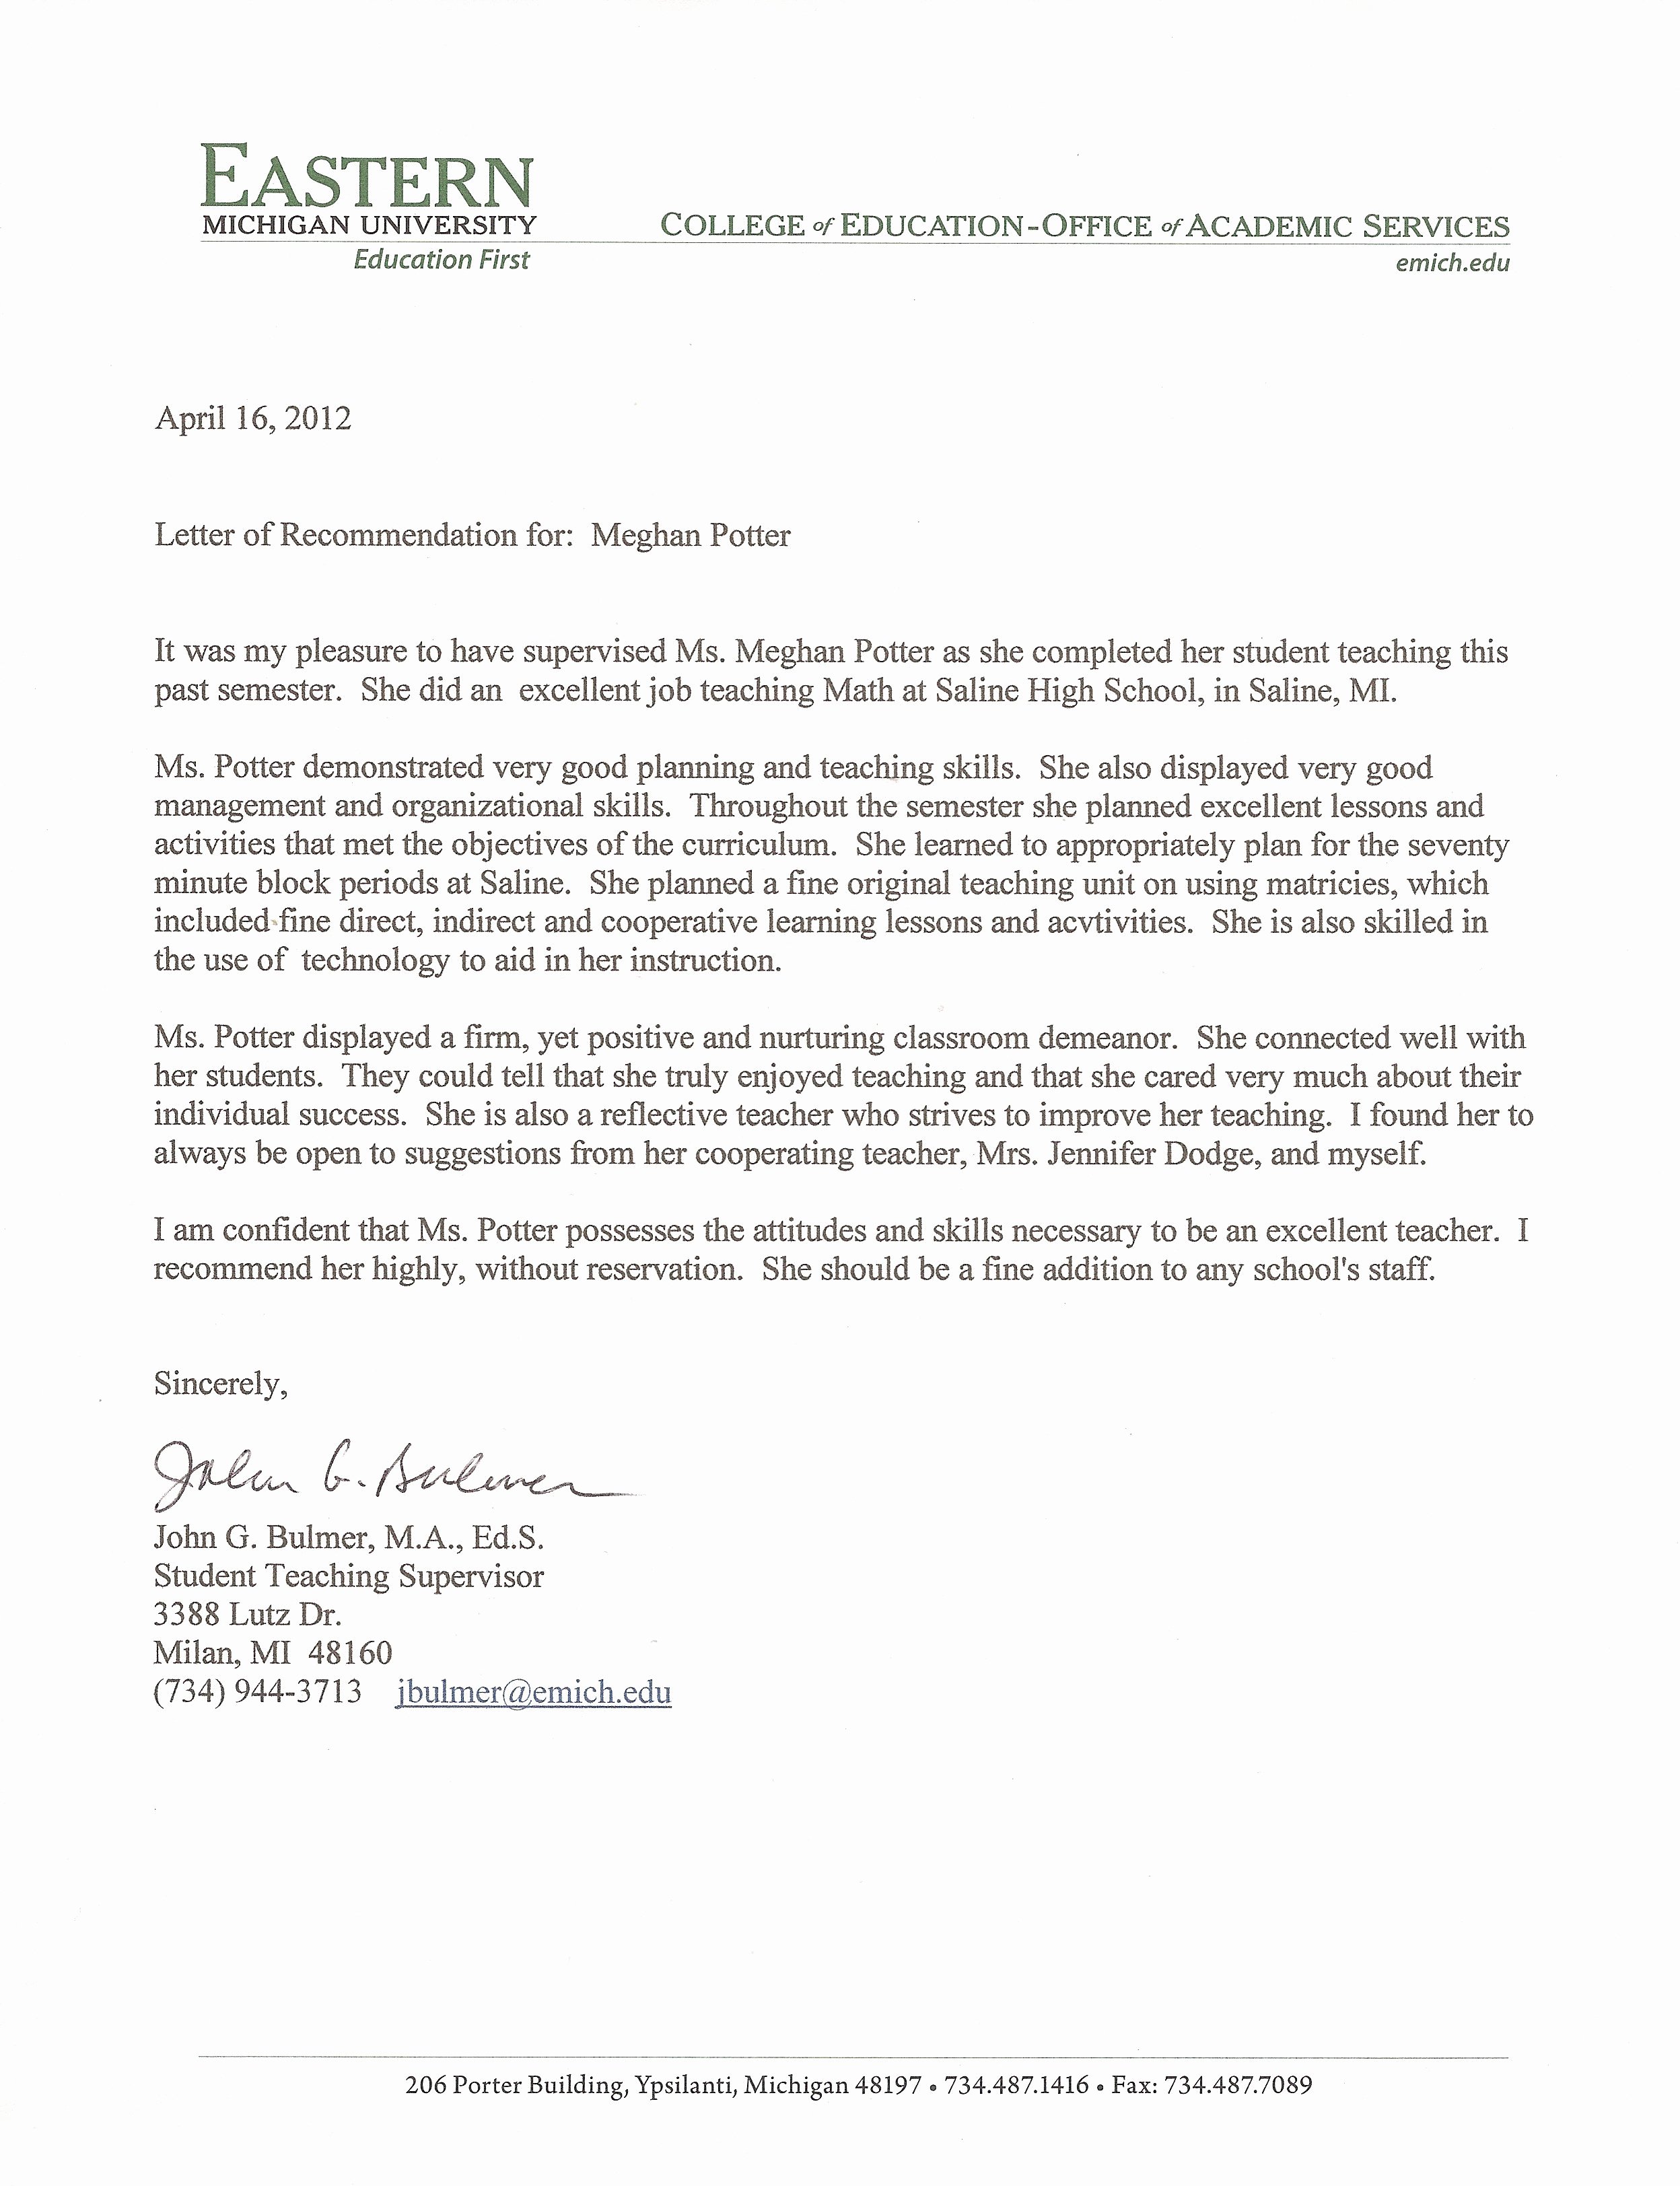 Student Teacher Letter Of Recommendation New Resume Meghan Potter